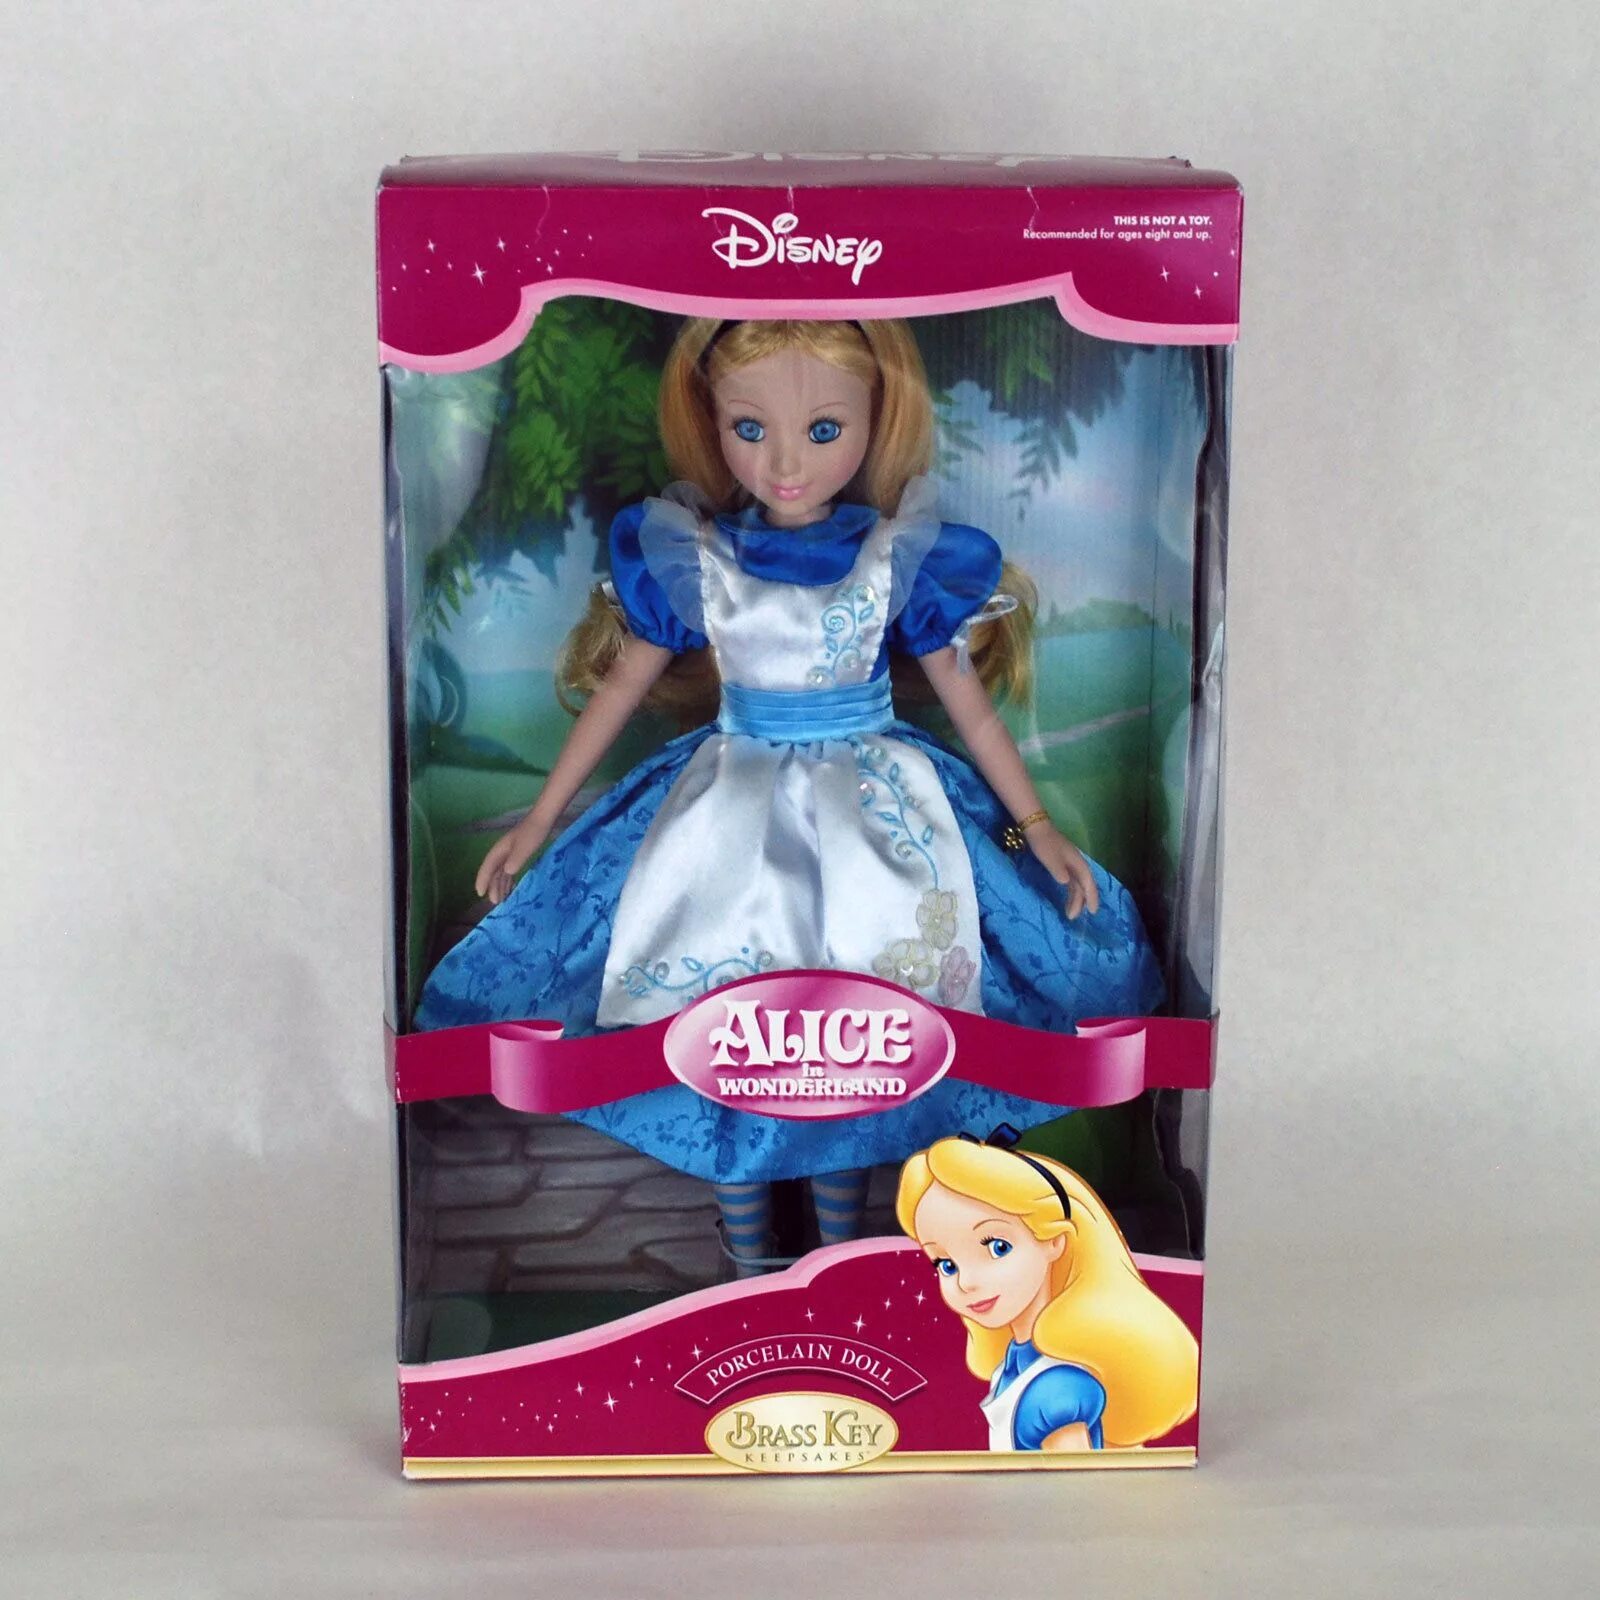 Принцесса чудес. Куклы Дисней стор Алиса. Алиса в стране чудес кукла Дисней стор. Алиса в Зазеркалье кукла Дисней стор. Jakks Pacific кукла белая Королева.